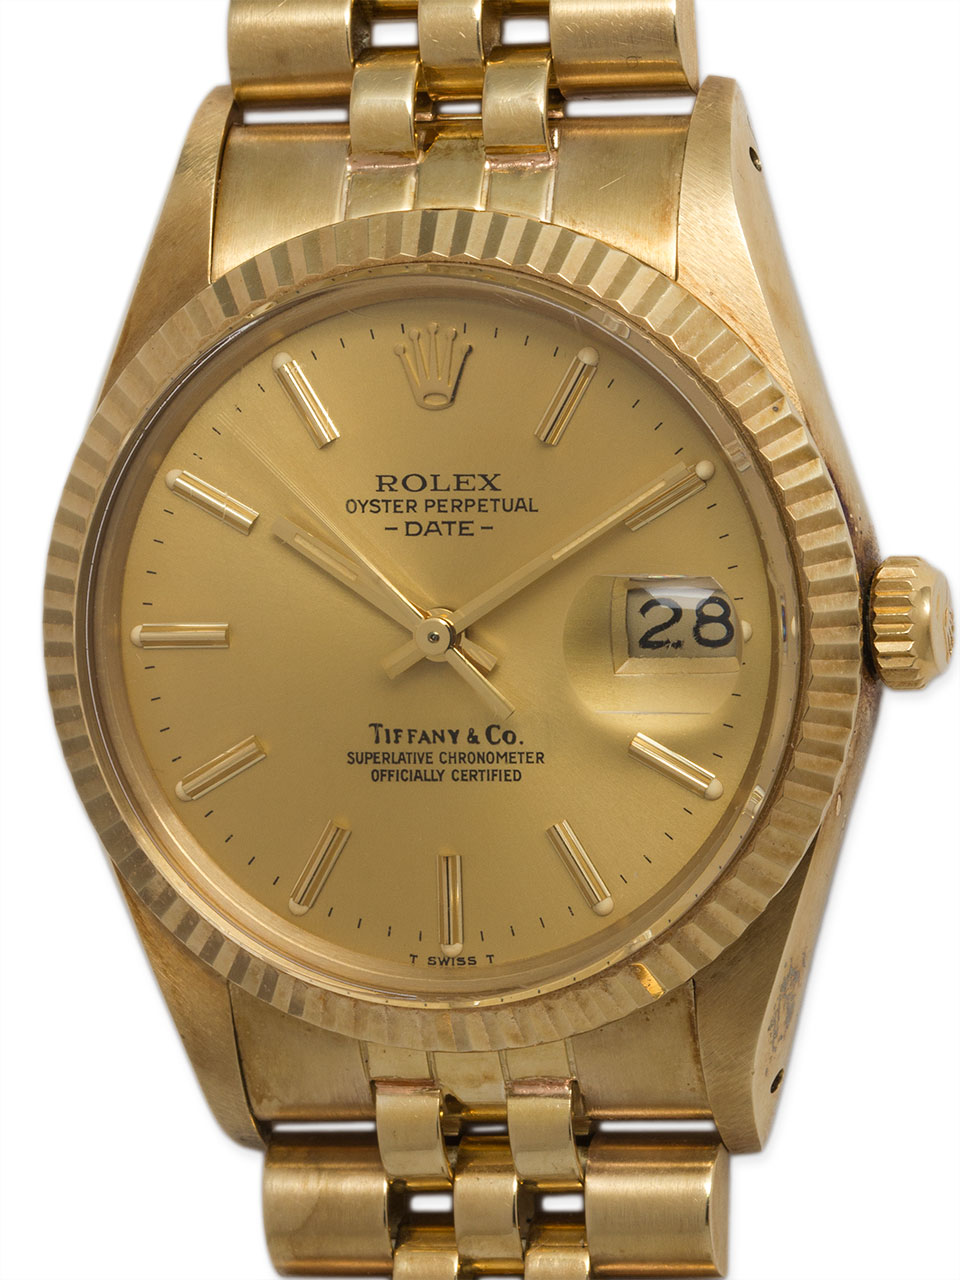 Rolex 14K YG Oyster Perpetual Date Tiffany & Co ref 15037 circa 1981